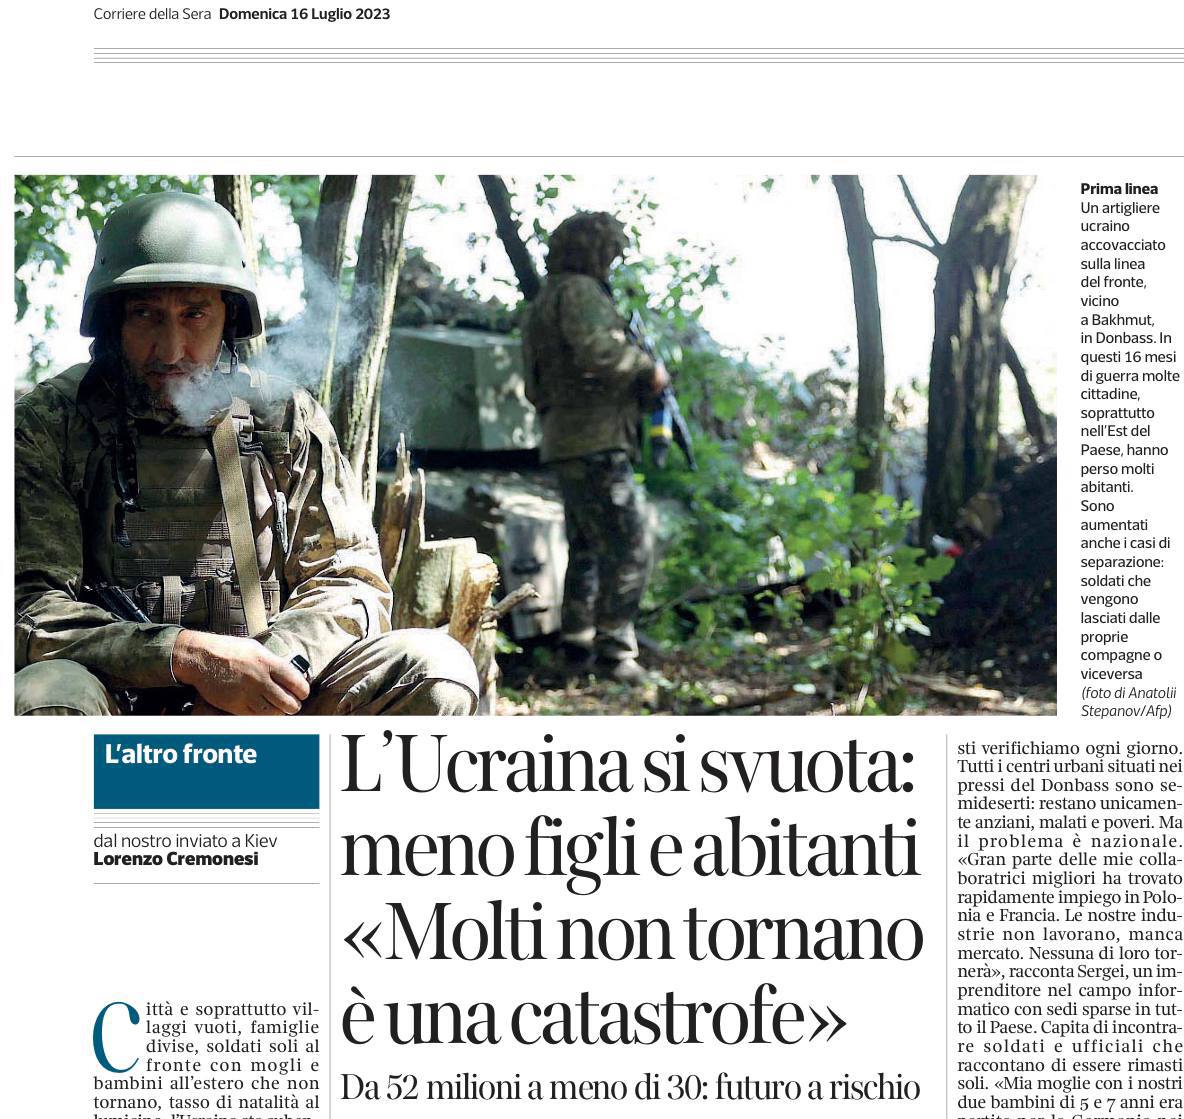 Итальянская Corriere della Sera опубликовала статью о демографическом опустошении Украины